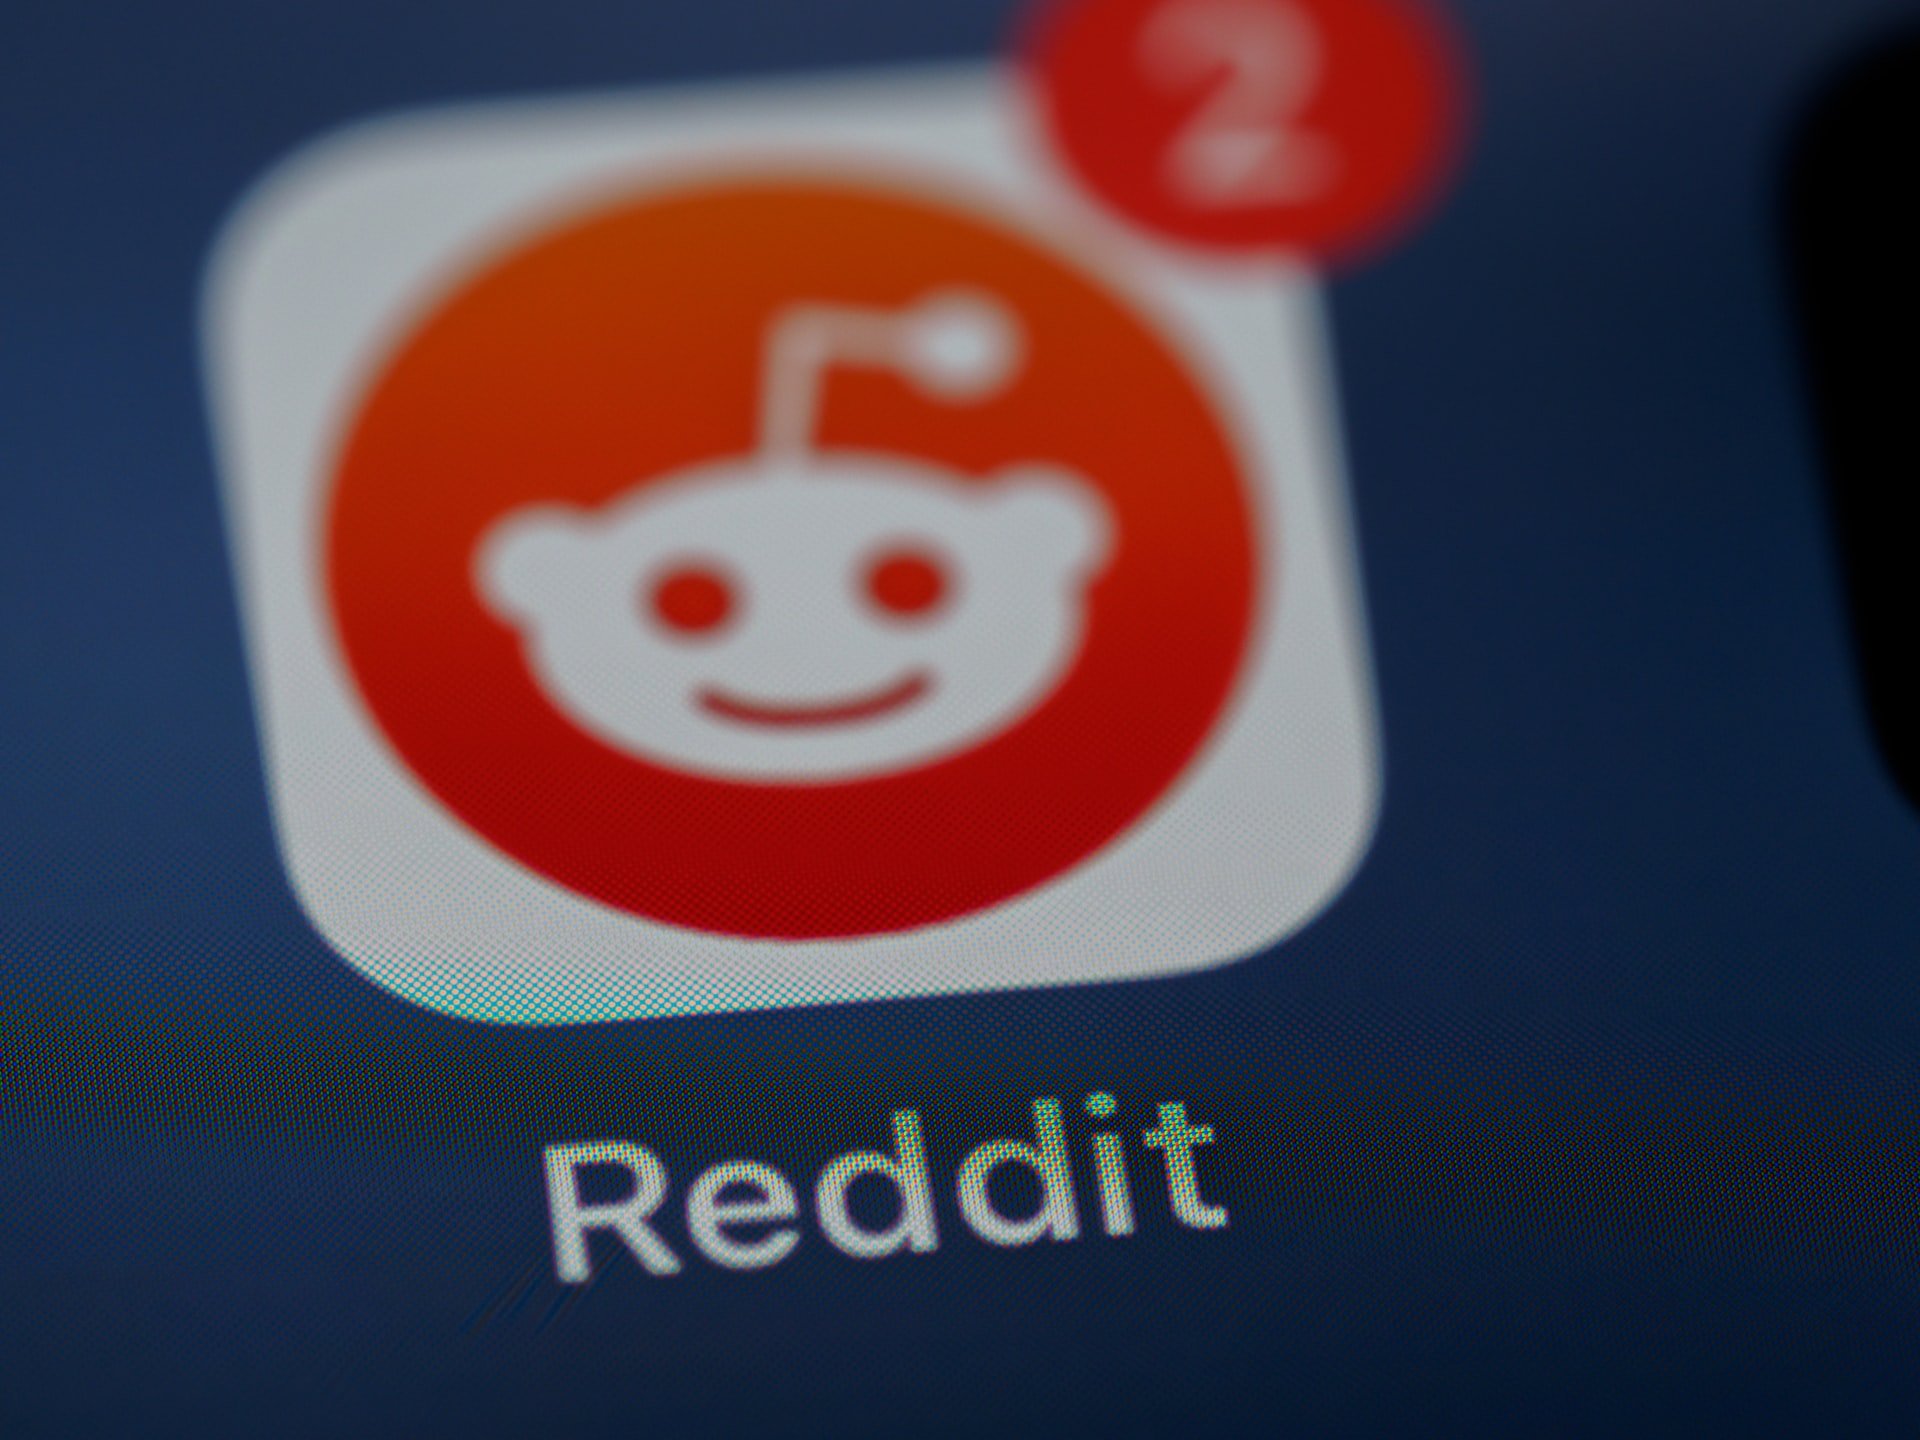 The Reddit logo | Source: Unsplash